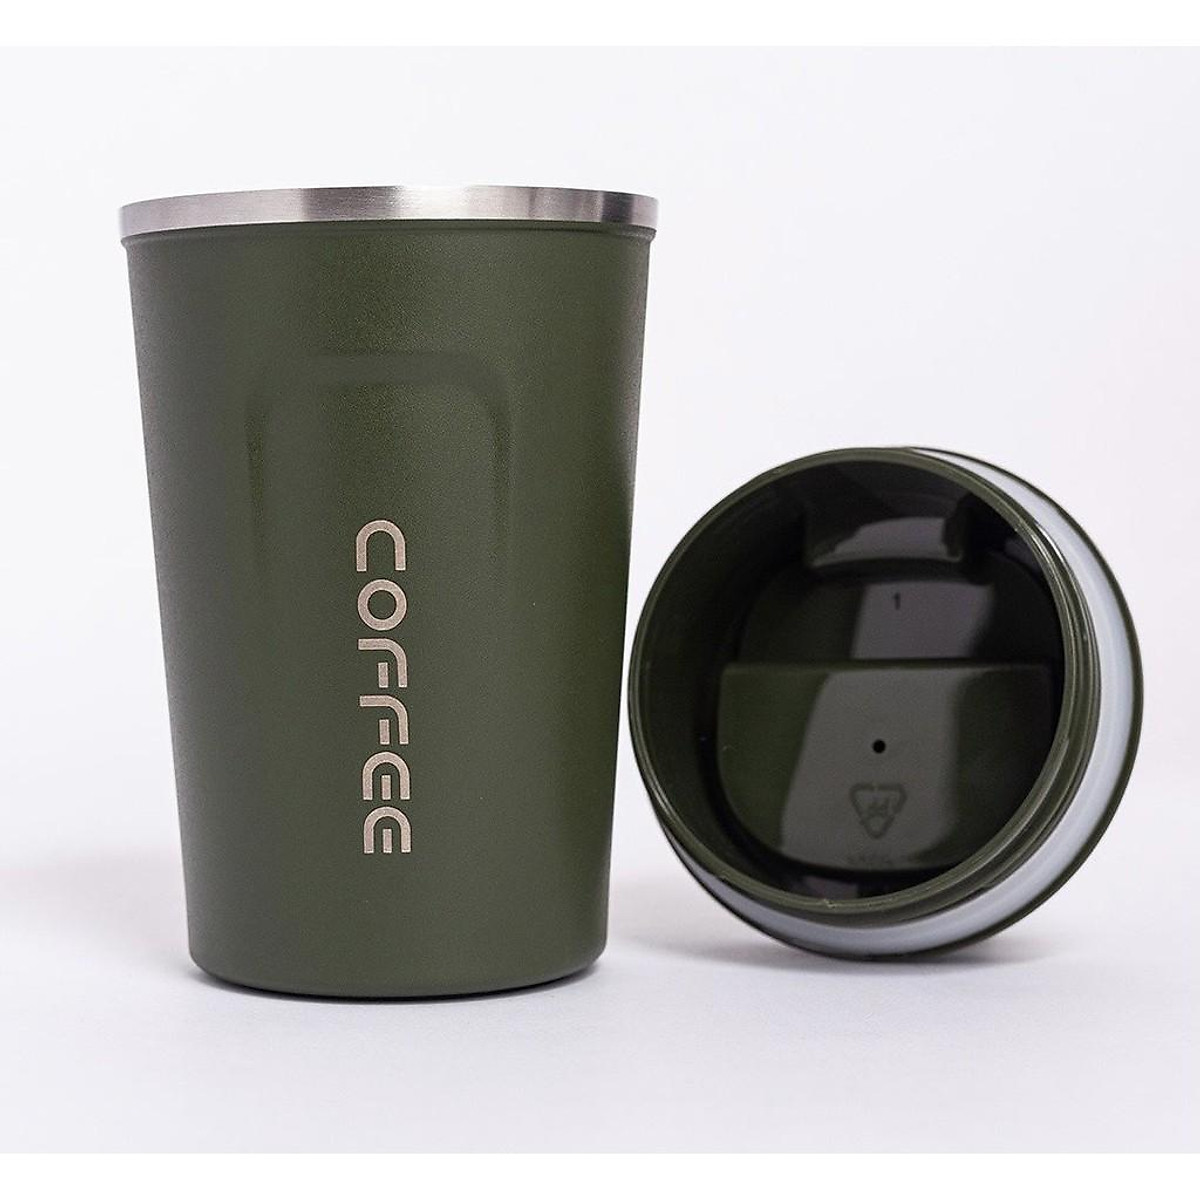 Ly giữ nhiệt Coffee Holic Inox Cao Cấp Giữ Nhiệt Ít Nhất 6 Tiếng BH 1-1 3 tháng